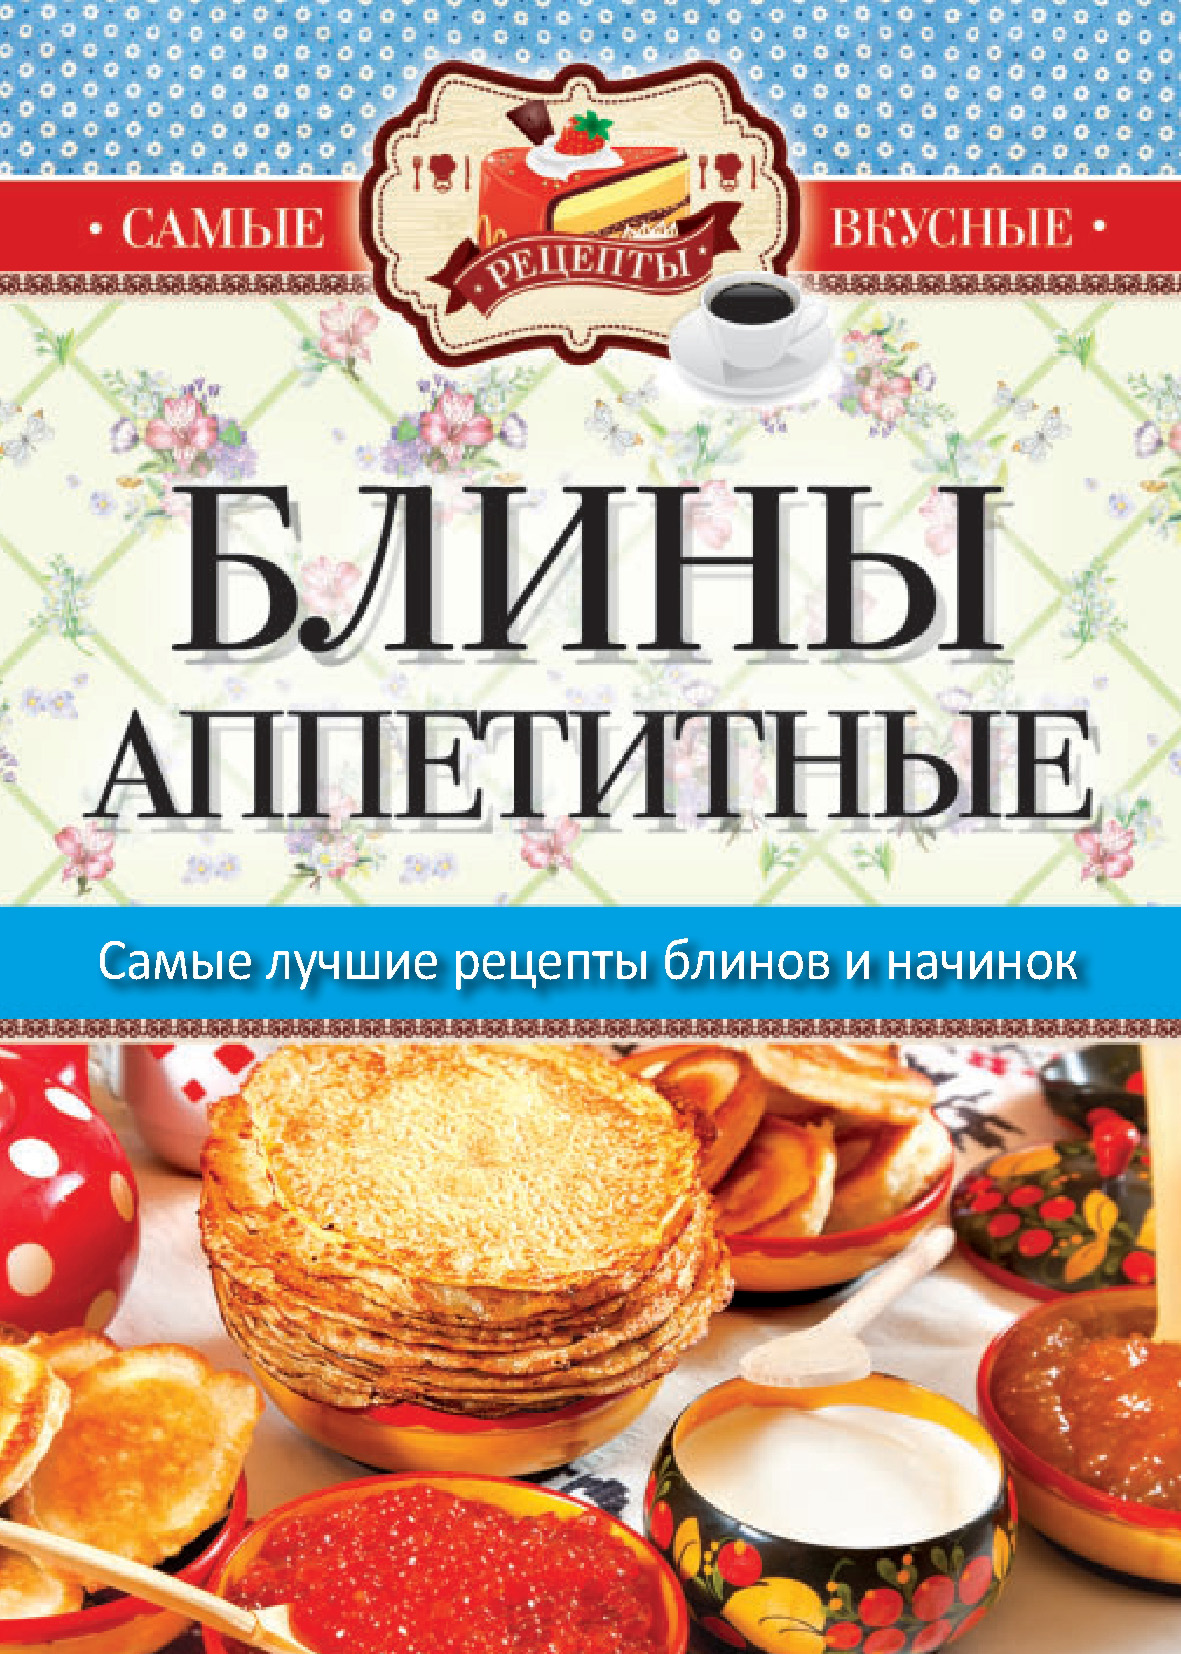 Книга рецептов блинов. Книга рецептов блины. Кулинарная книга блинчики. Традиционные русские блюда.